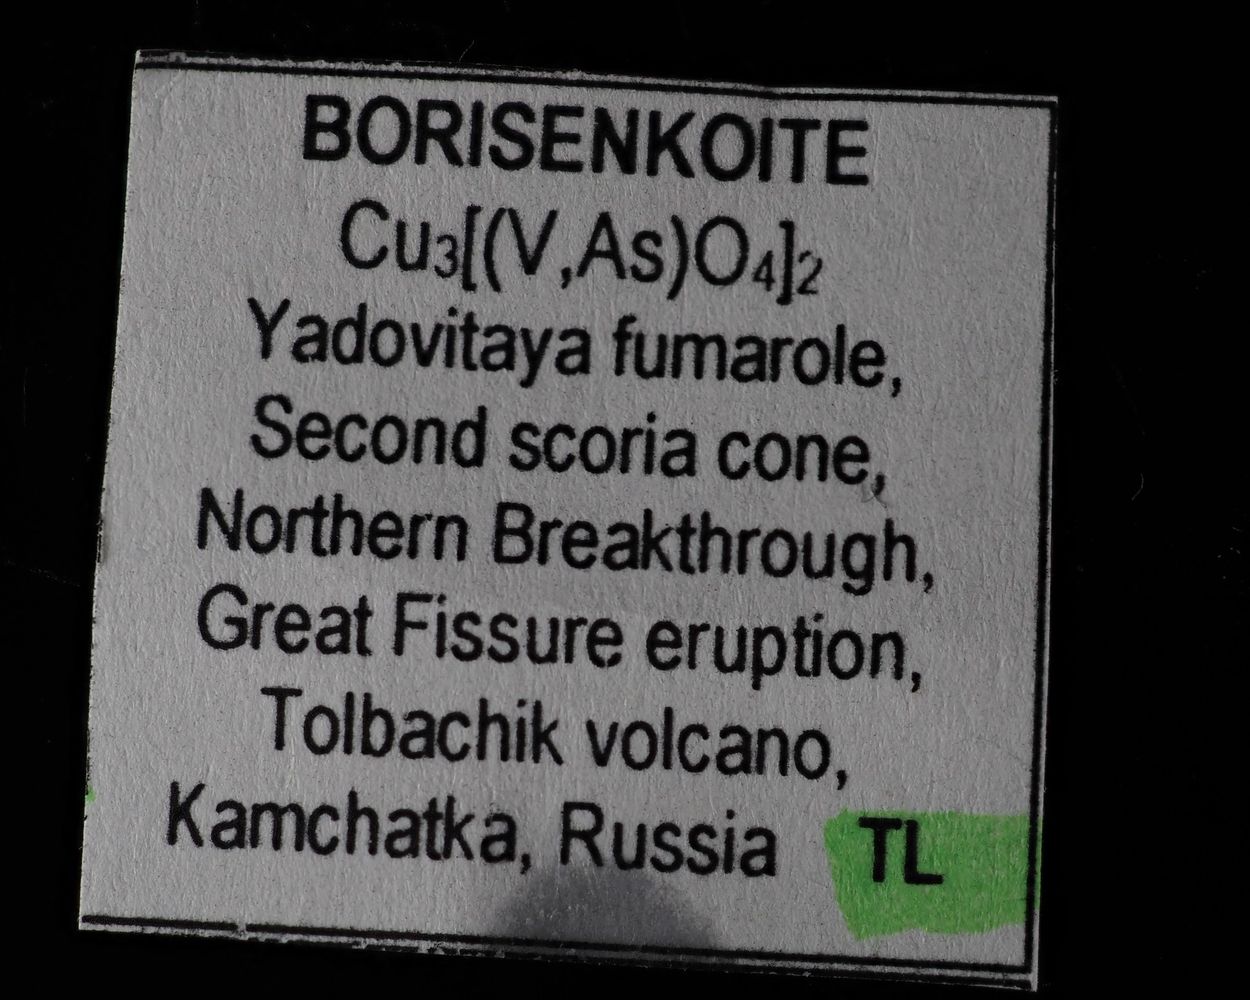 Borisenkoite